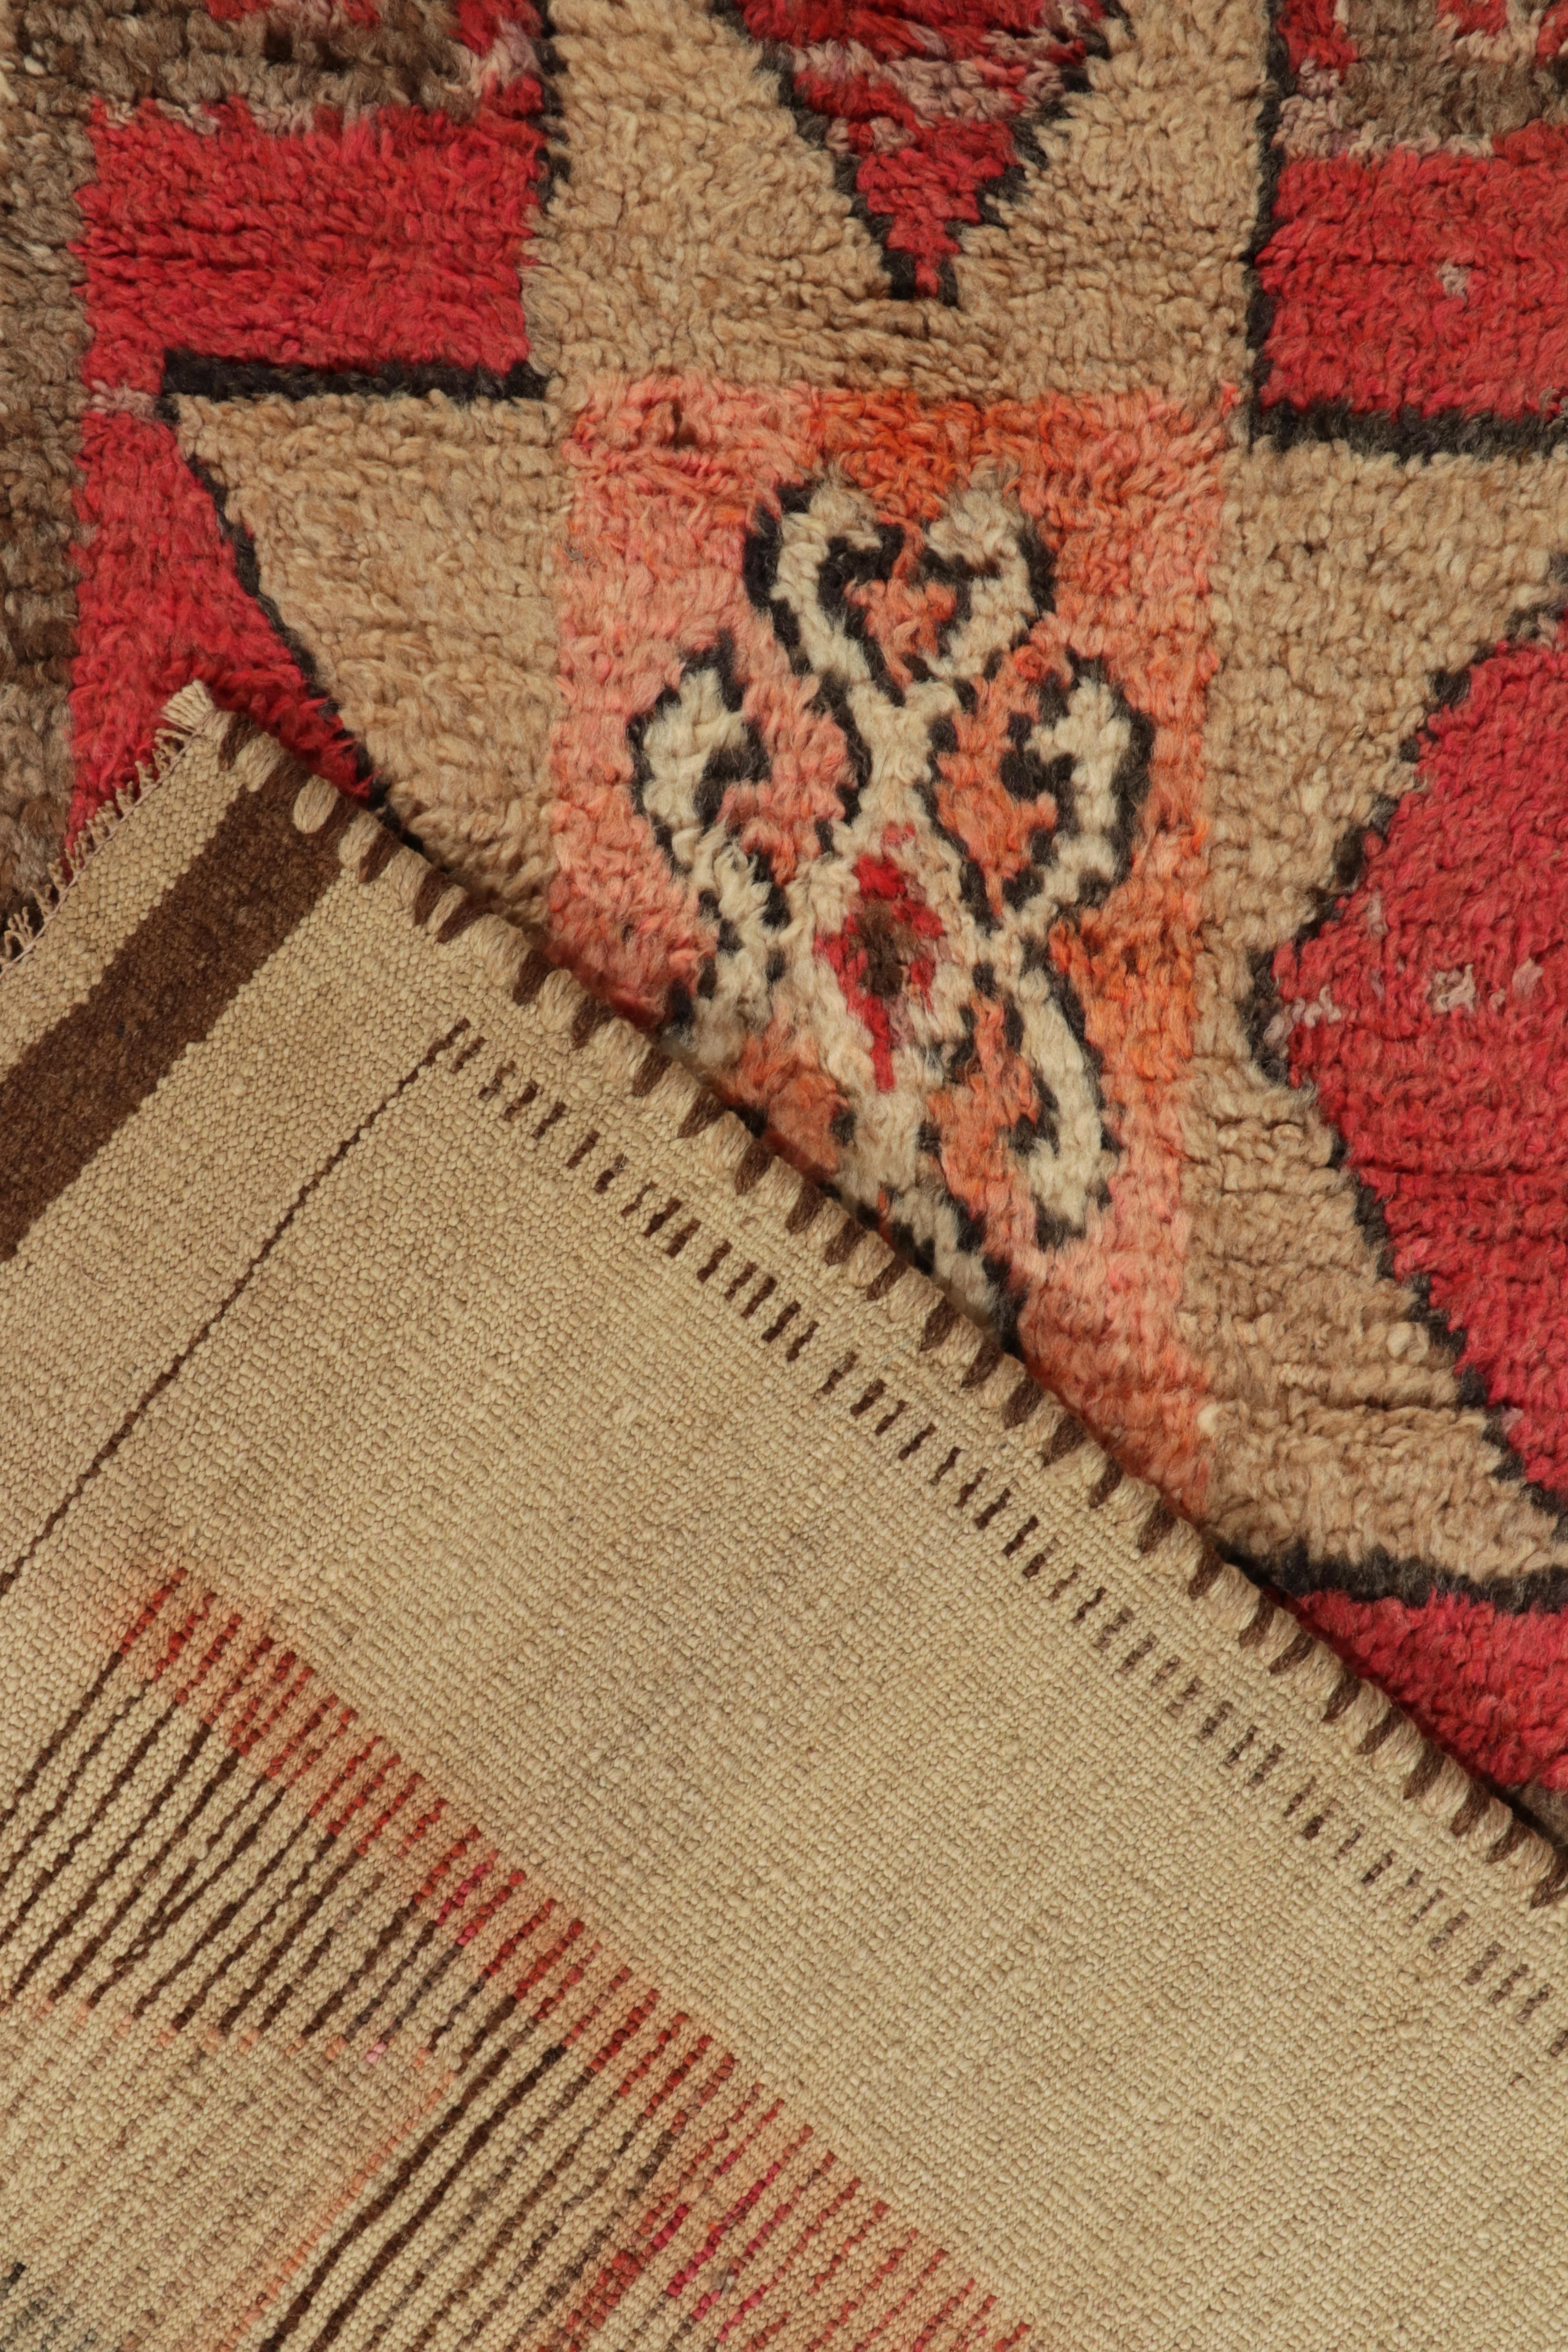 Wool Vintage Tribal Runner in Beige-Brown, Red Medallion Patterns by Rug & Kilim For Sale